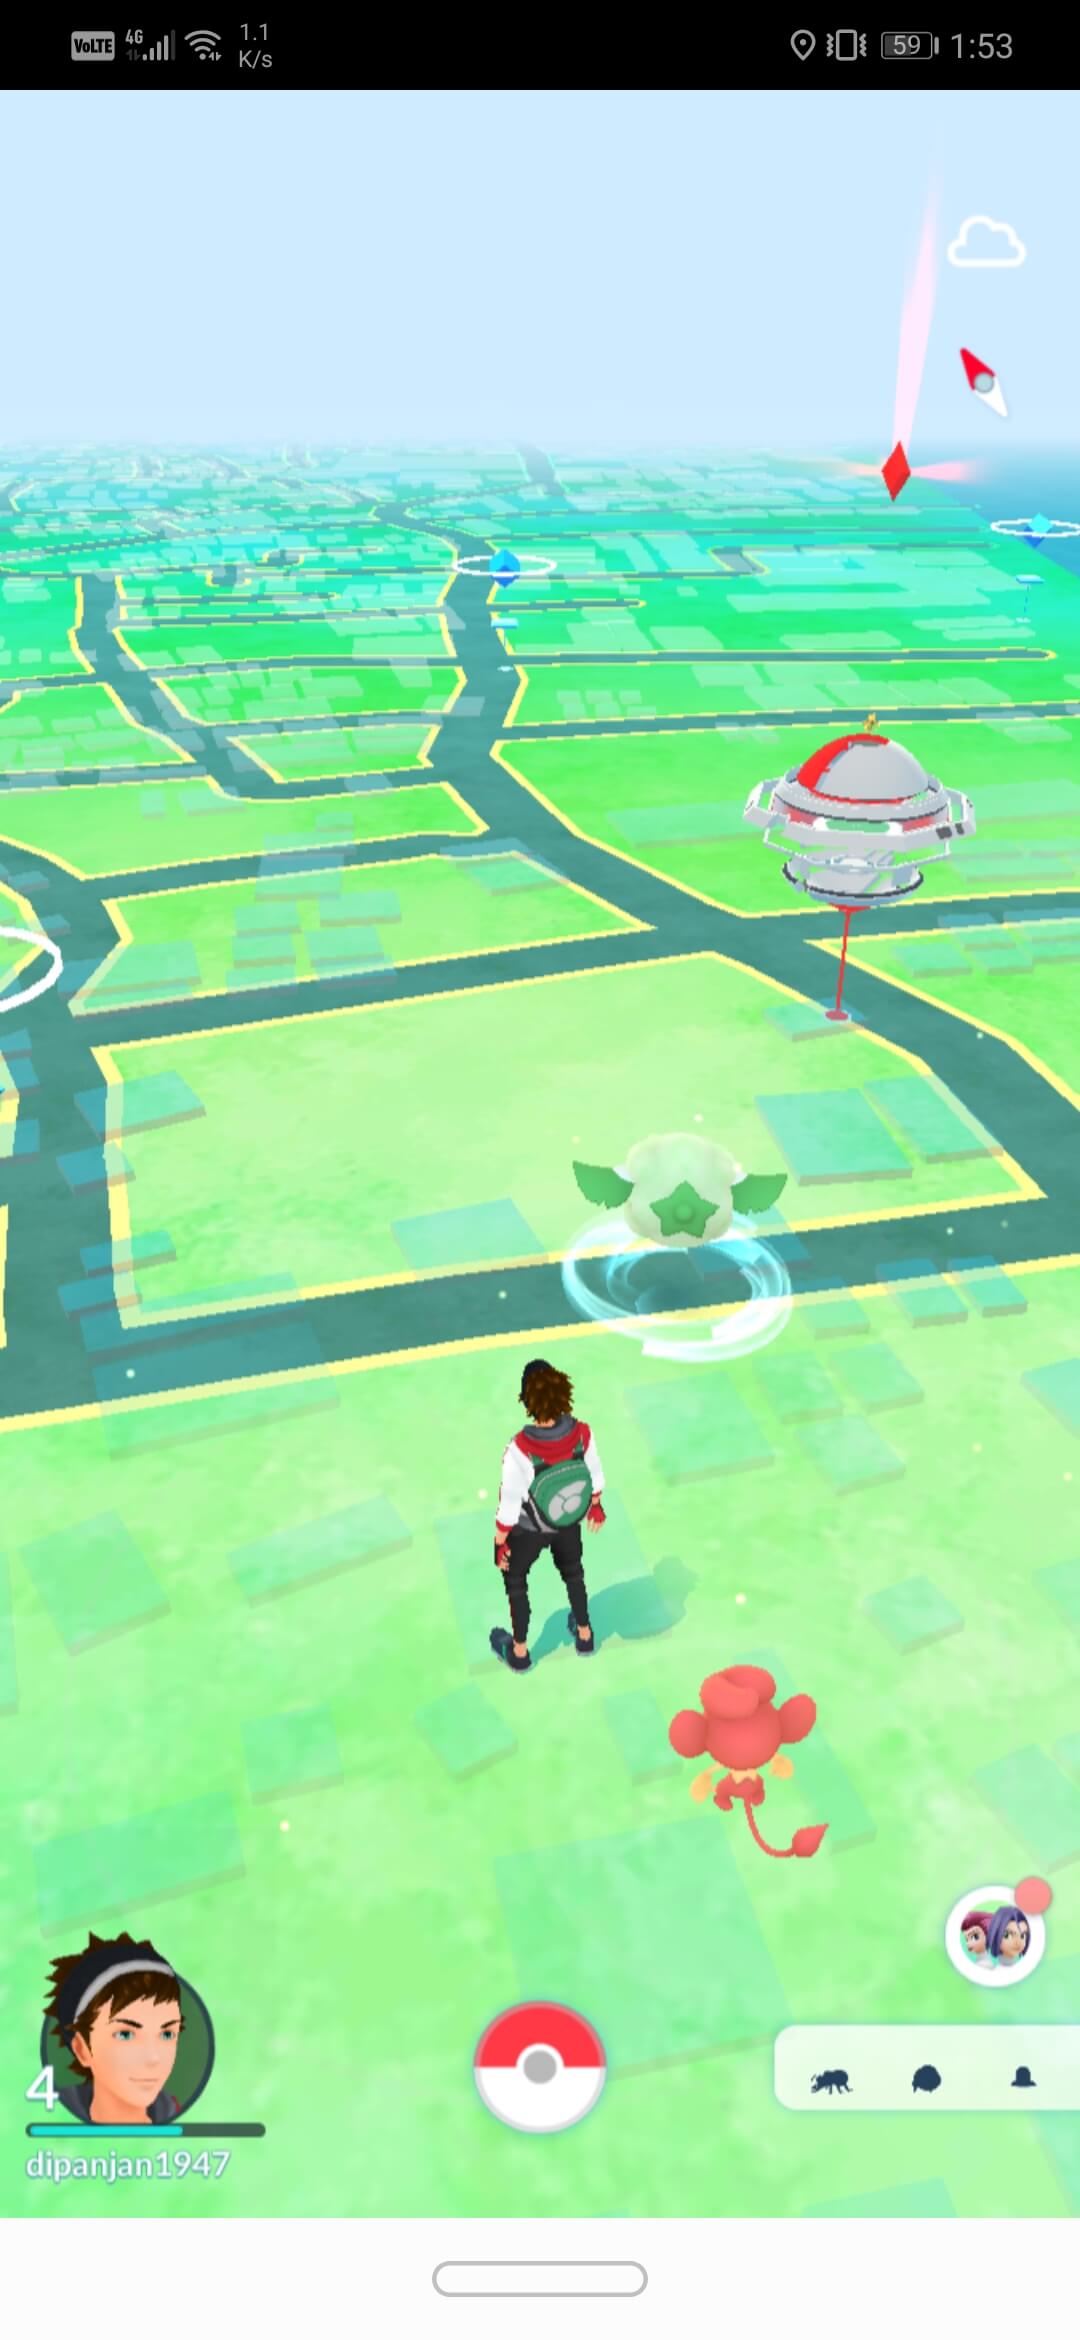 Tippen Sie auf die Pokéball-Schaltfläche unten in der Mitte des Bildschirms | So ändern Sie den Namen von Pokémon Go nach einem neuen Update